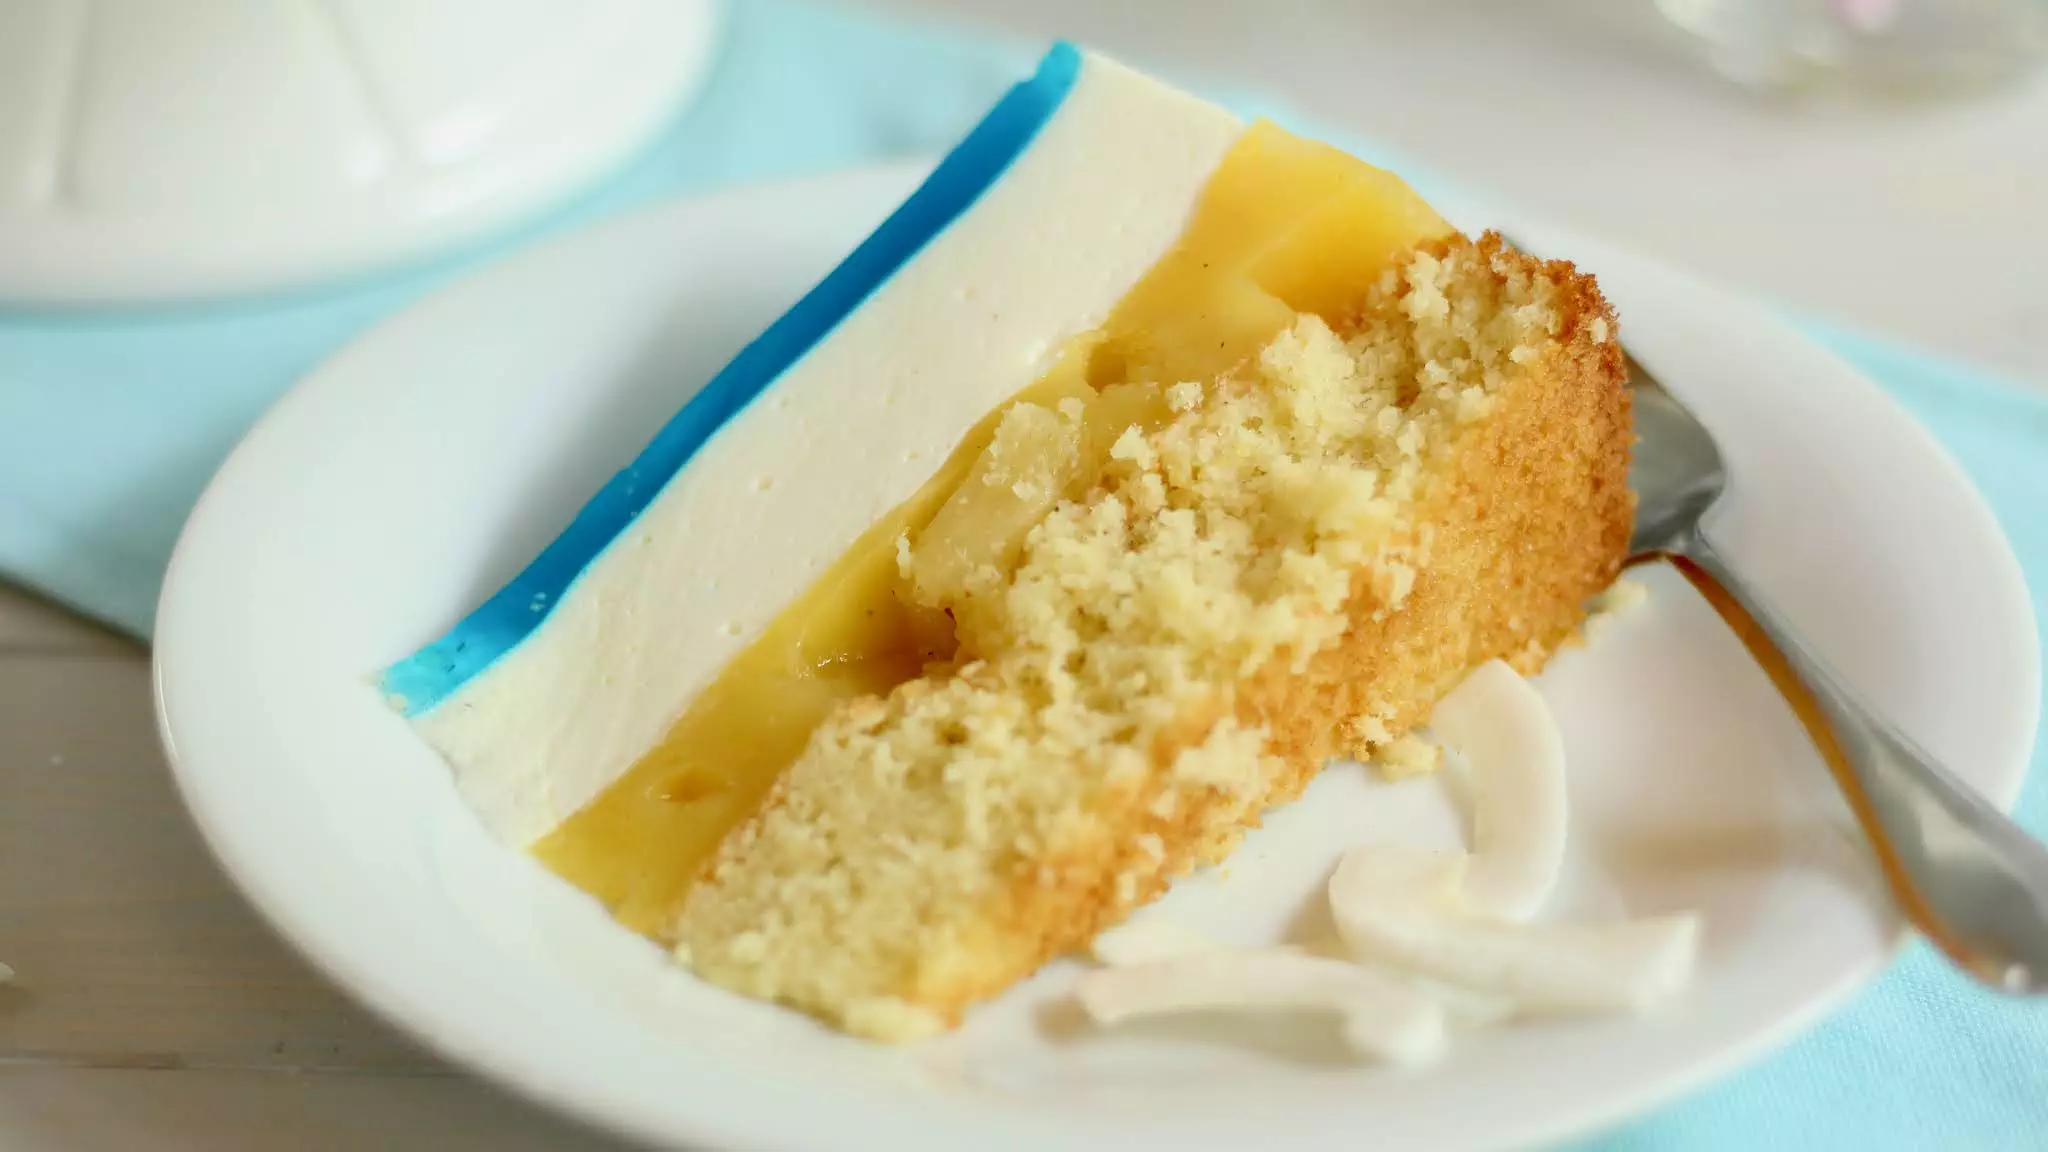 🏝Perfekt für die Pool Party! 🍍Swimmingpool-Torte! 🏝Blue Hawaii Torte | Rezept und Video von Sugarprincess 🏝